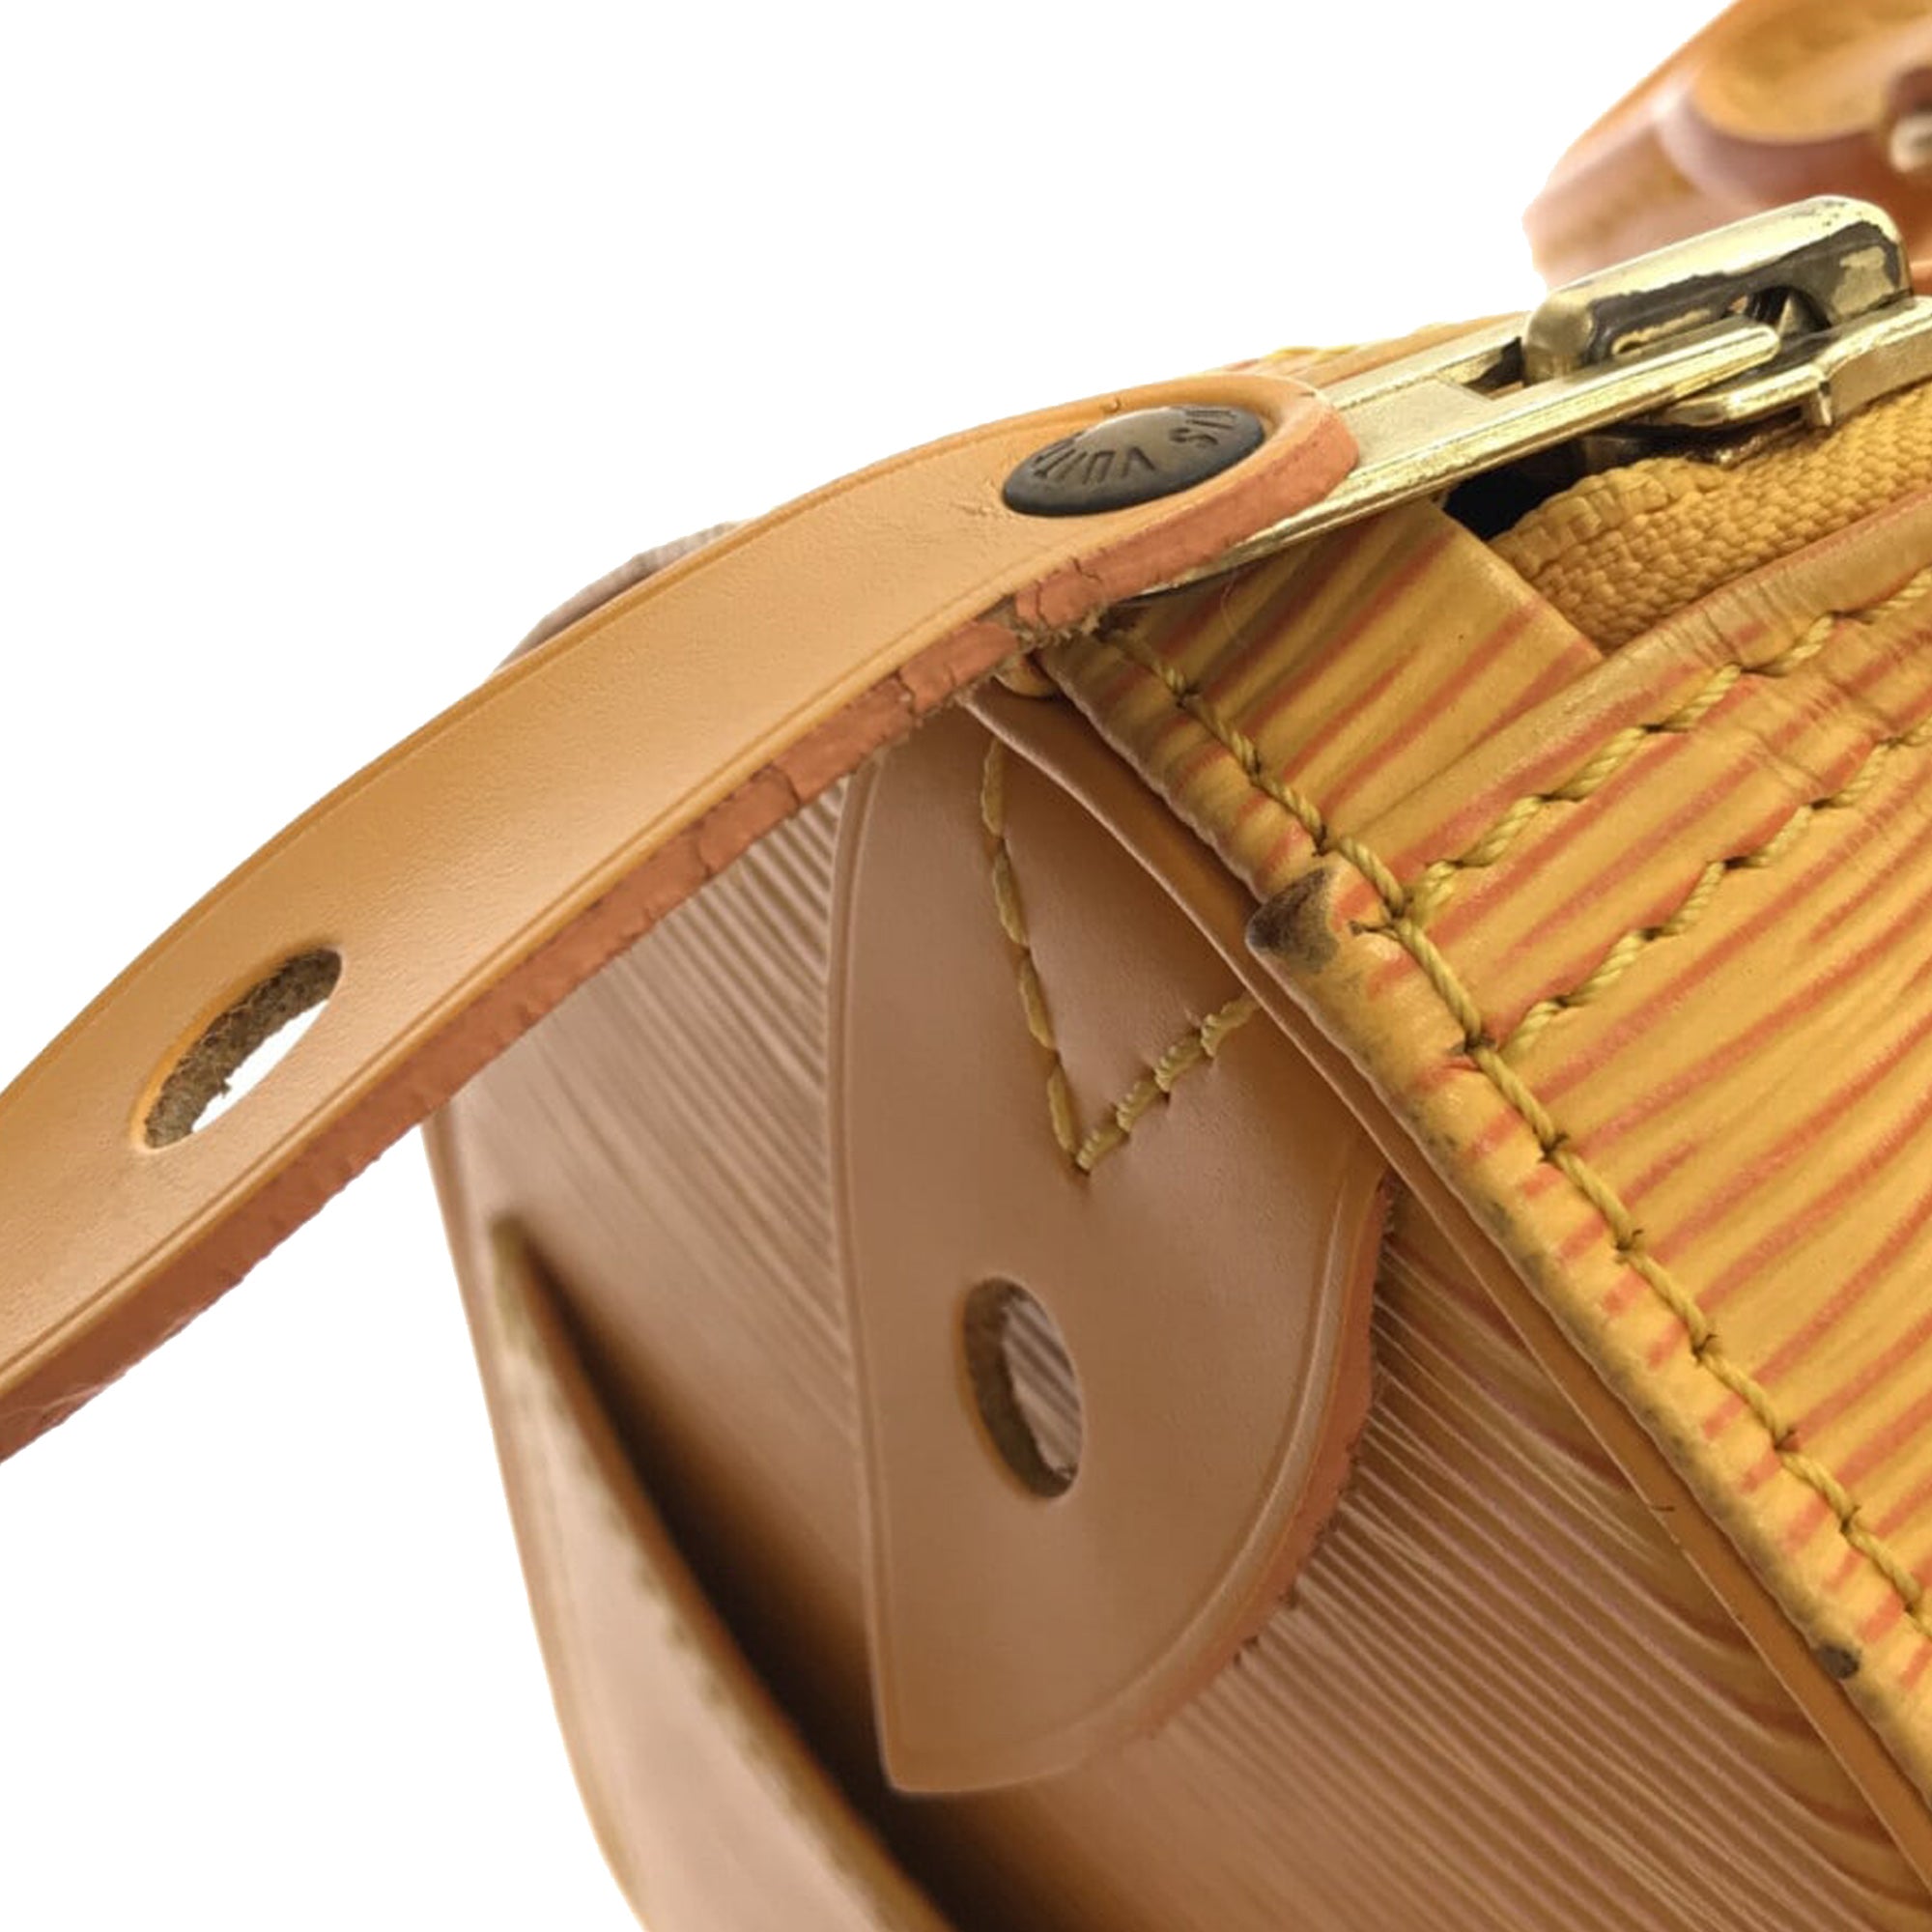 Louis Vuitton Epi Speedy 25 Boston Handbag Yellow – Timeless